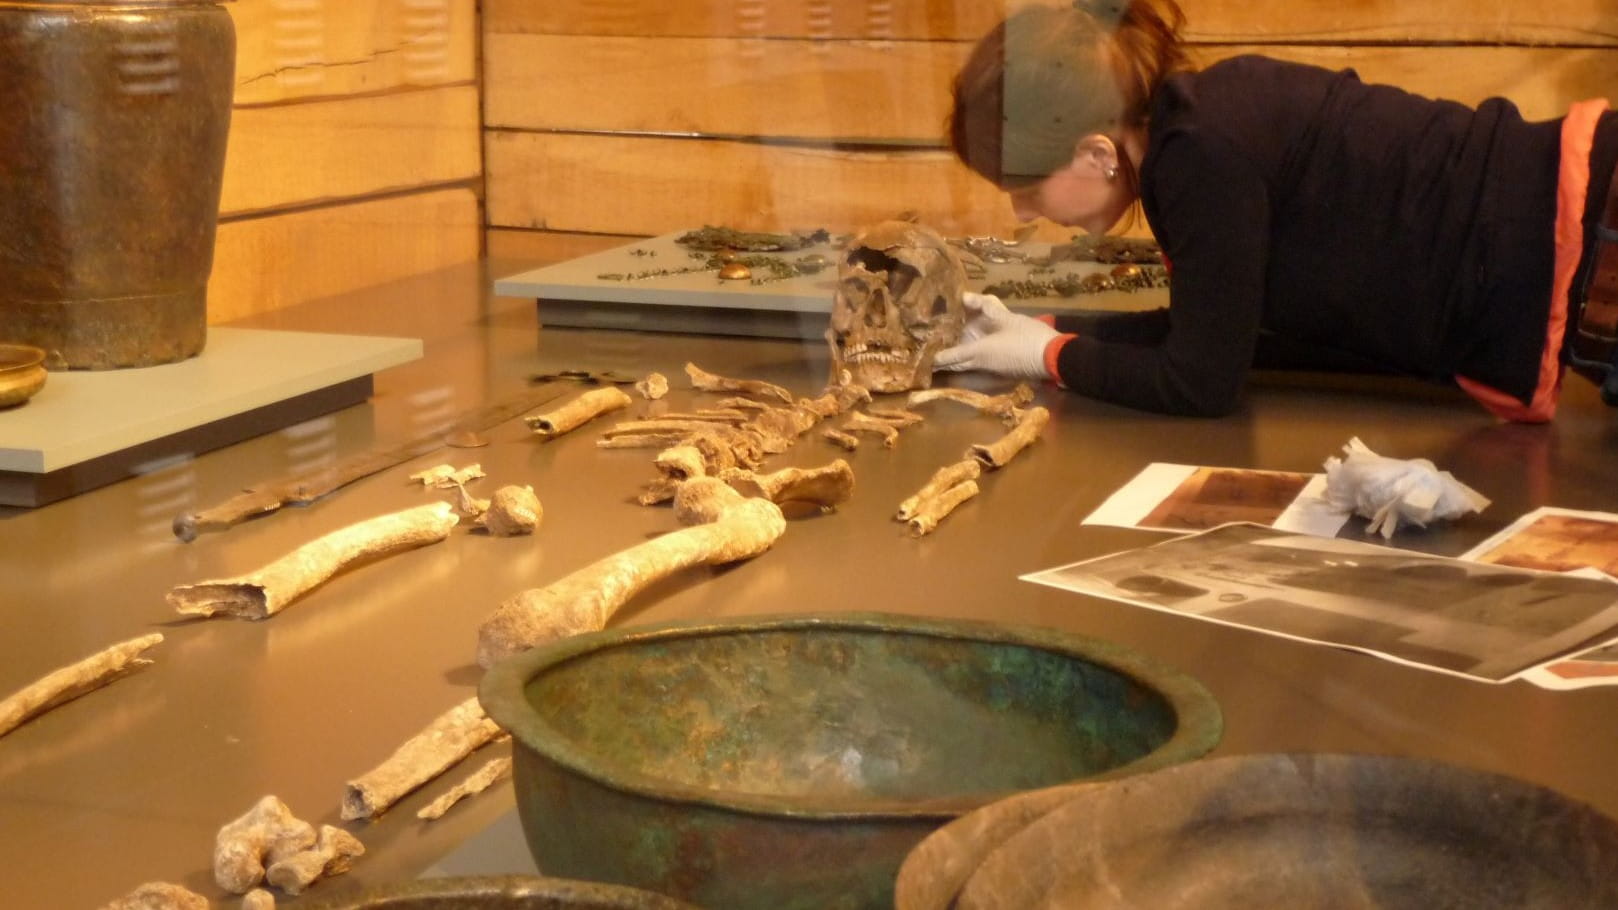 Archäologin präpariert liegend die Knochen des Keltenfürsten in der Vitrine mit Grabbeigaben und Schüsseln im Vordergrund. 